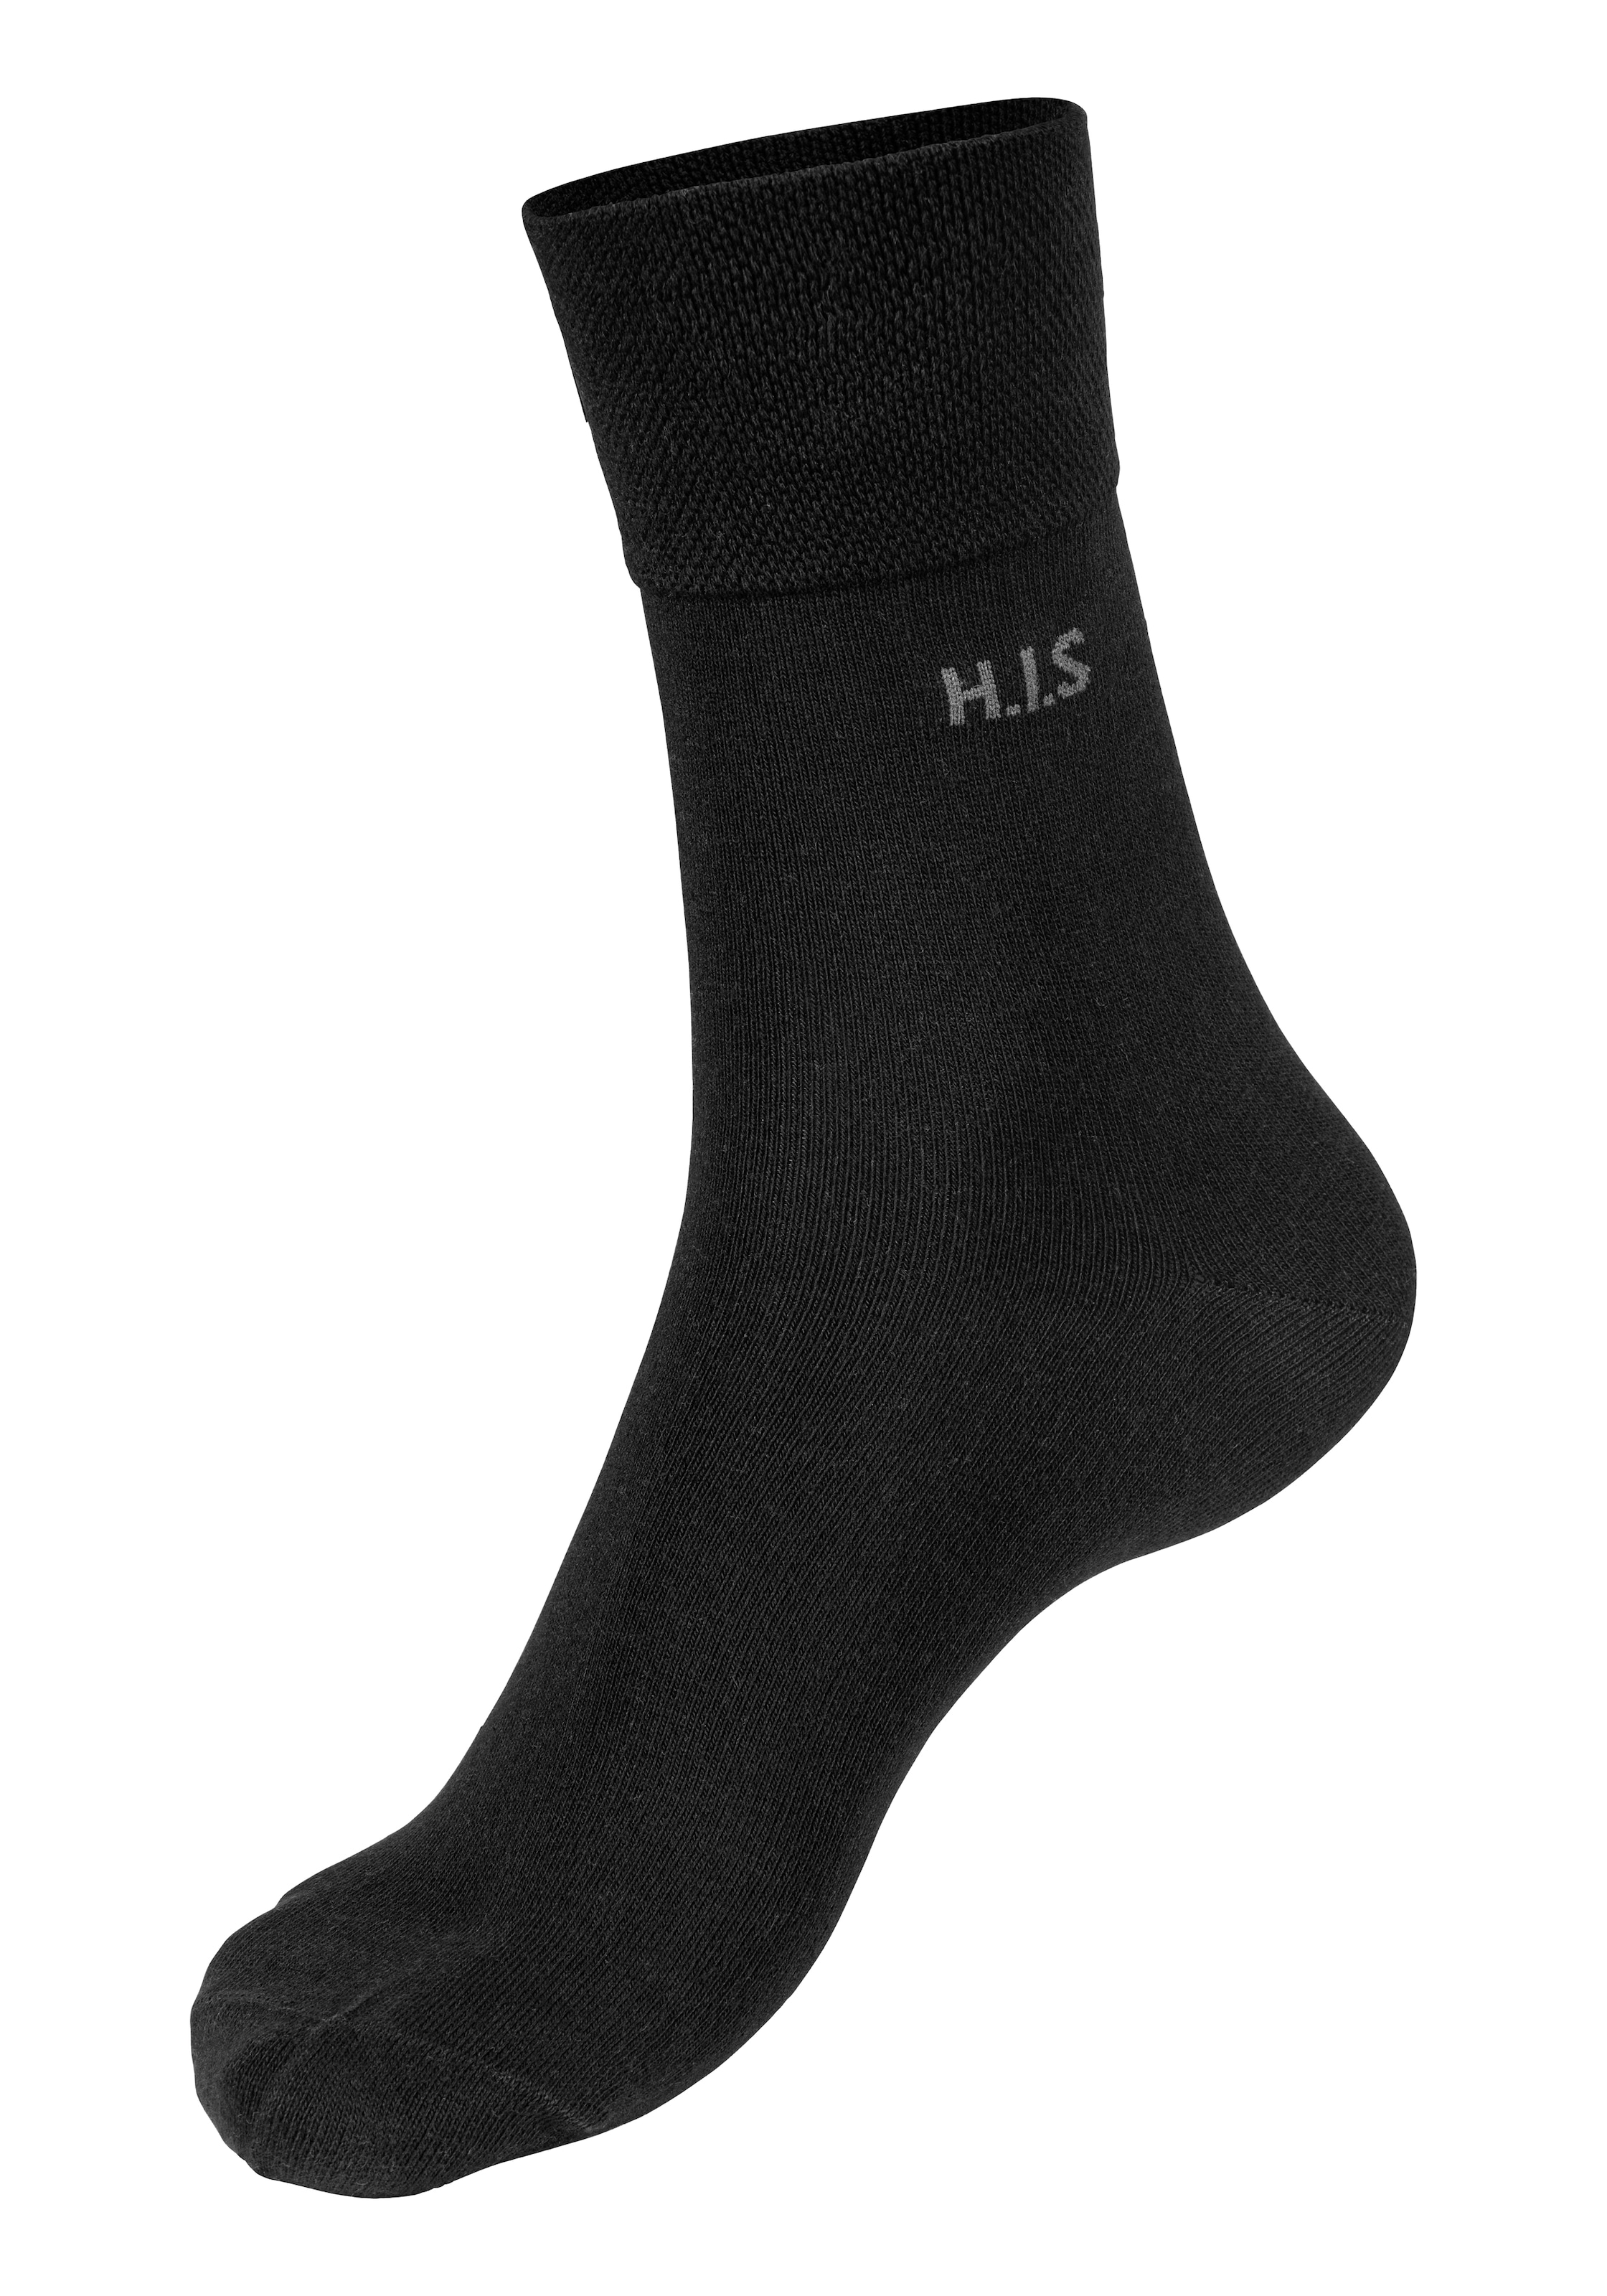 H.I.S 12 ohne Gummi Socken (Packung Paar) einschneidendes